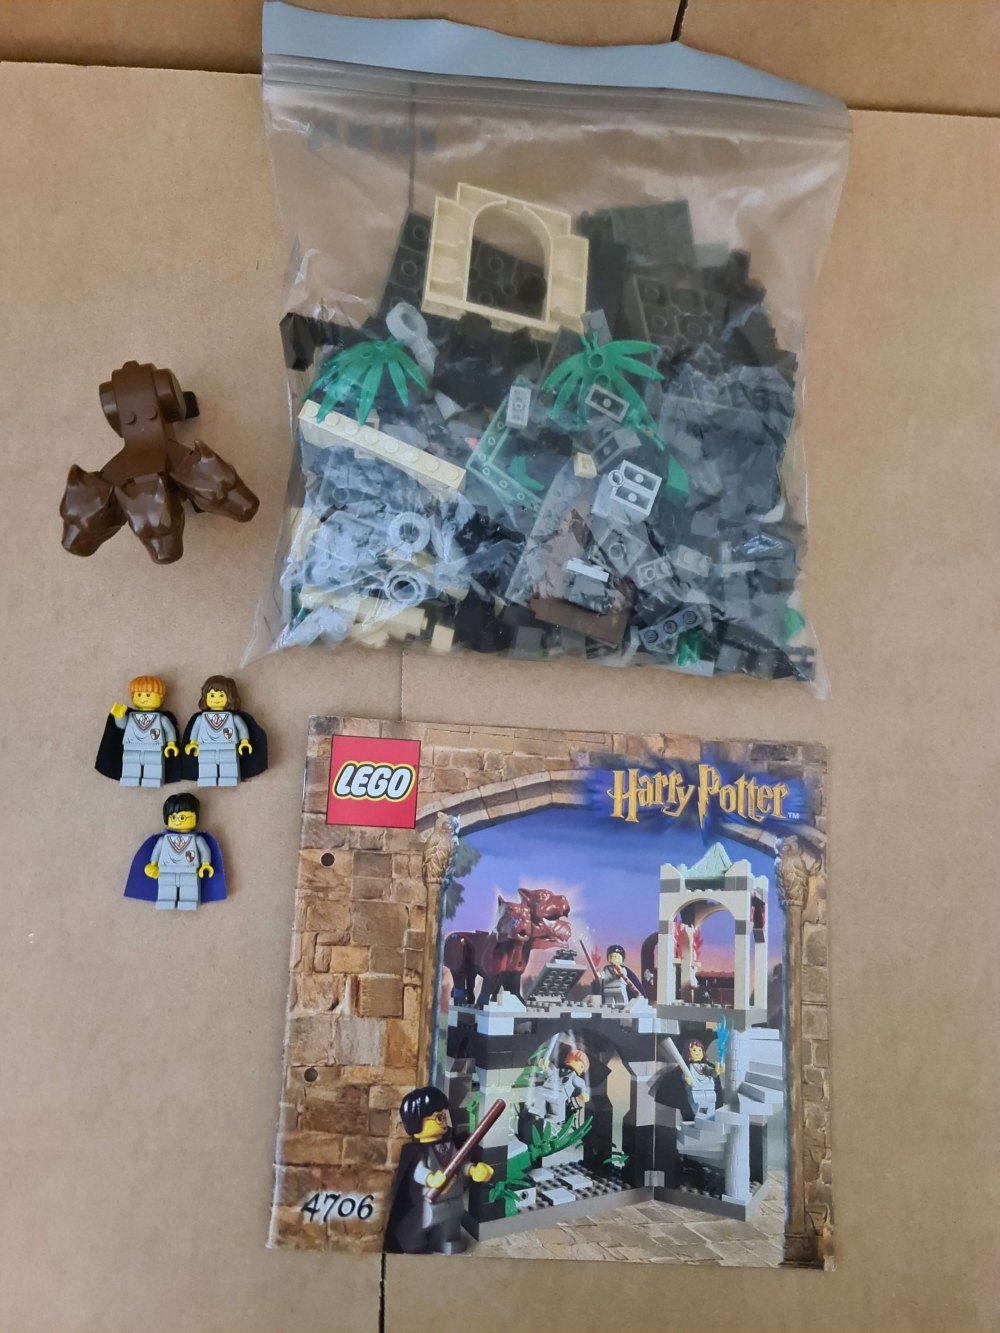 Sett 4706 fra Lego Harry Potter serien.

Flott sett. Komplett med manual.
Flotte figurer.